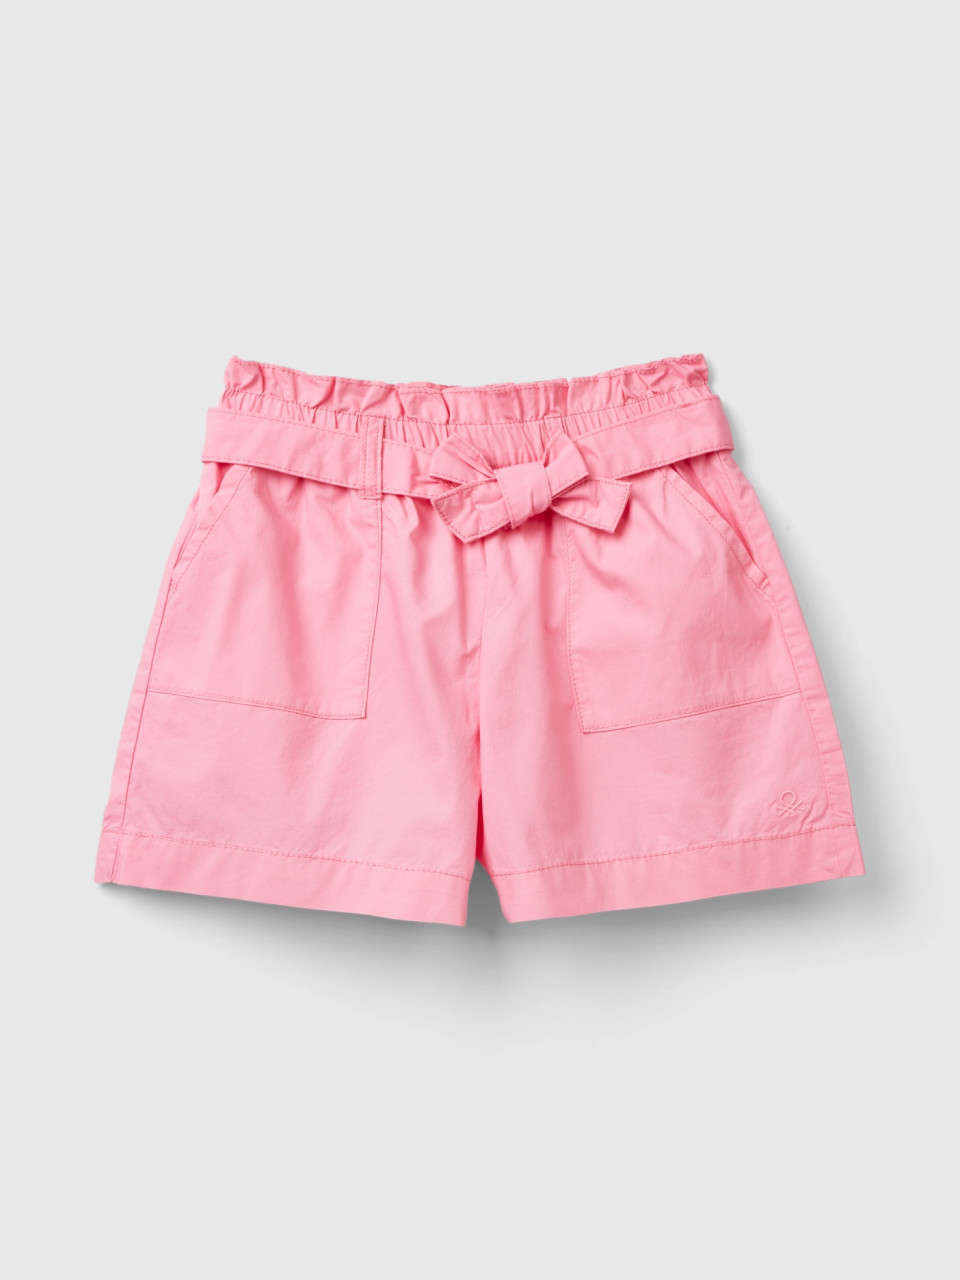 Benetton, Paperbag Shorts, Pink, Kids